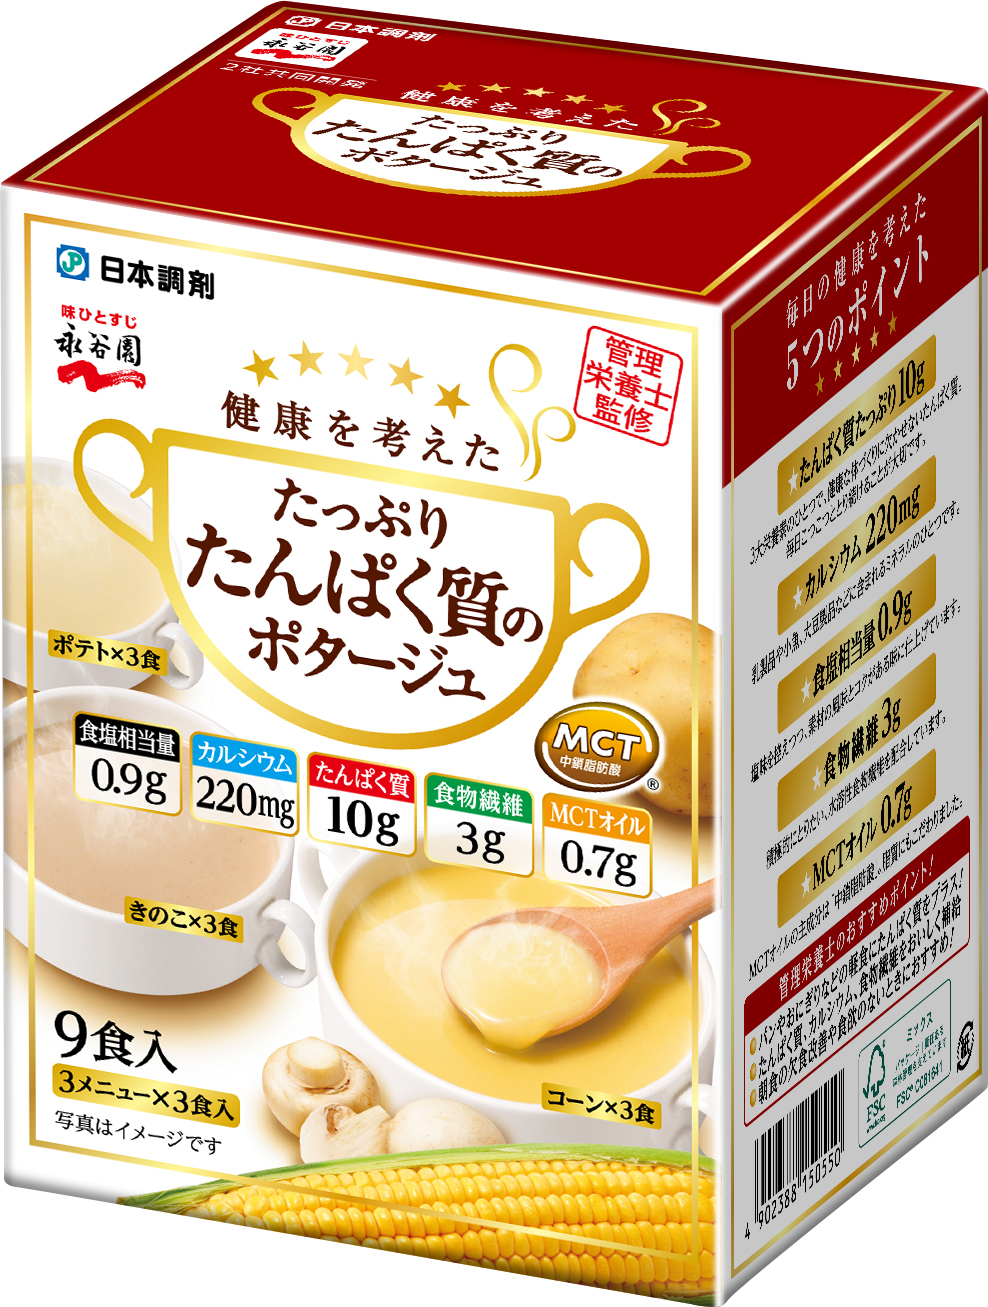 日本調剤と永谷園共同開発「たっぷりたんぱく質のポタージュ」商品画像